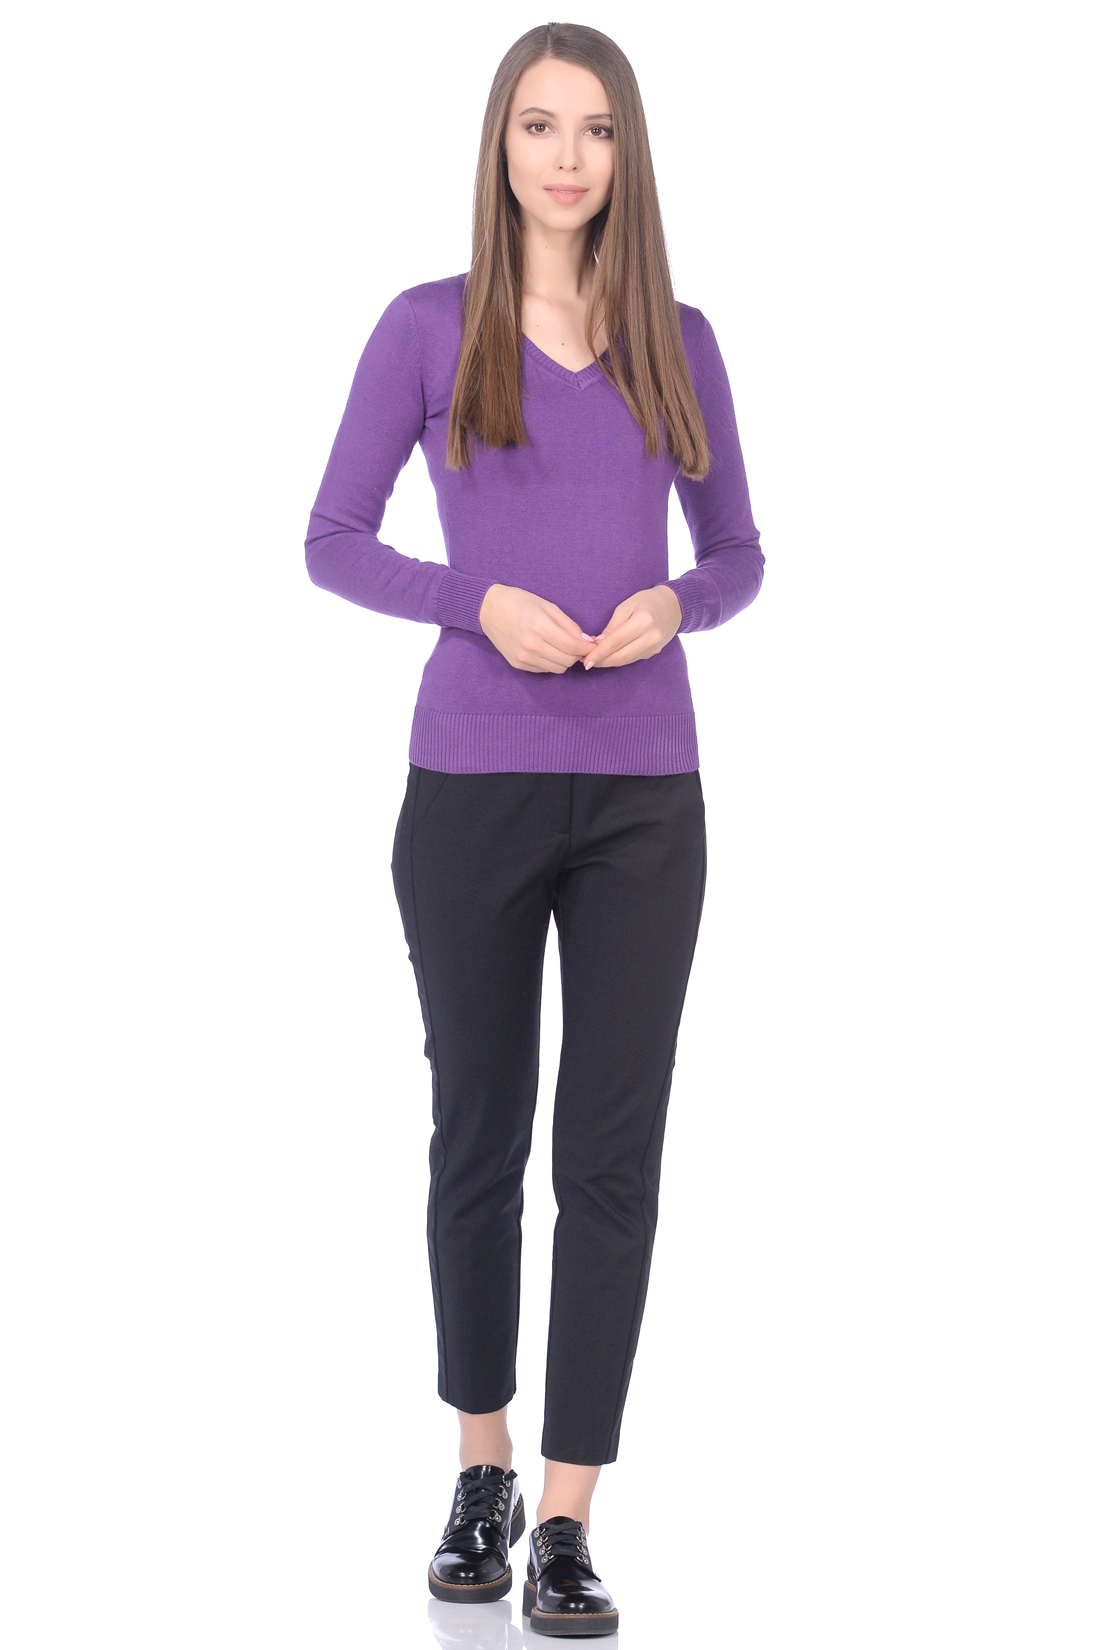 Базовый пуловер из хлопка (арт. baon B139201), размер 3XL, цвет фиолетовый Базовый пуловер из хлопка (арт. baon B139201) - фото 3